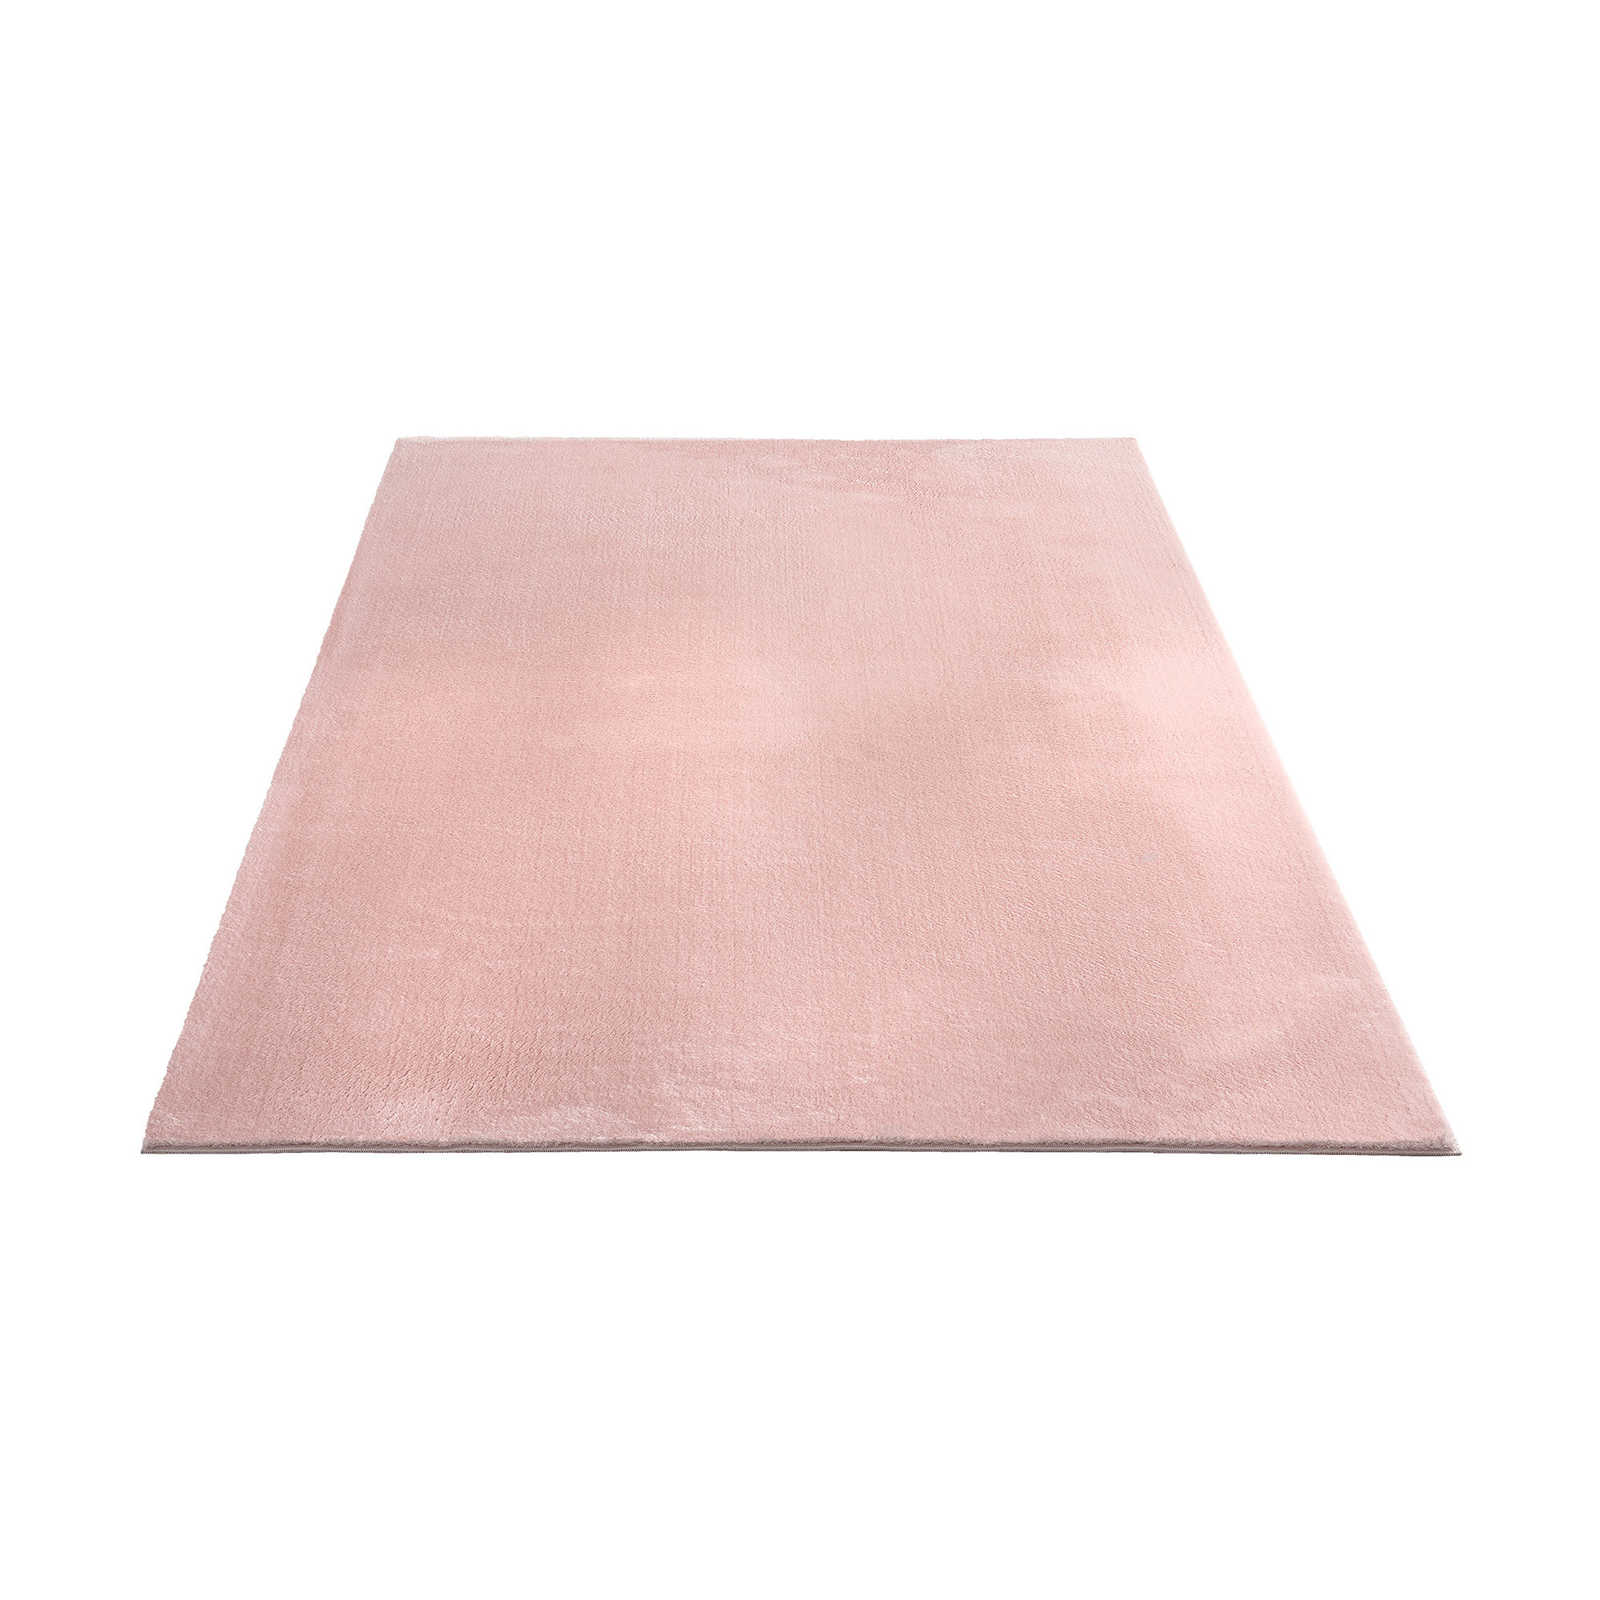 Fijnpolig tapijt in roze - 290 x 200 cm
